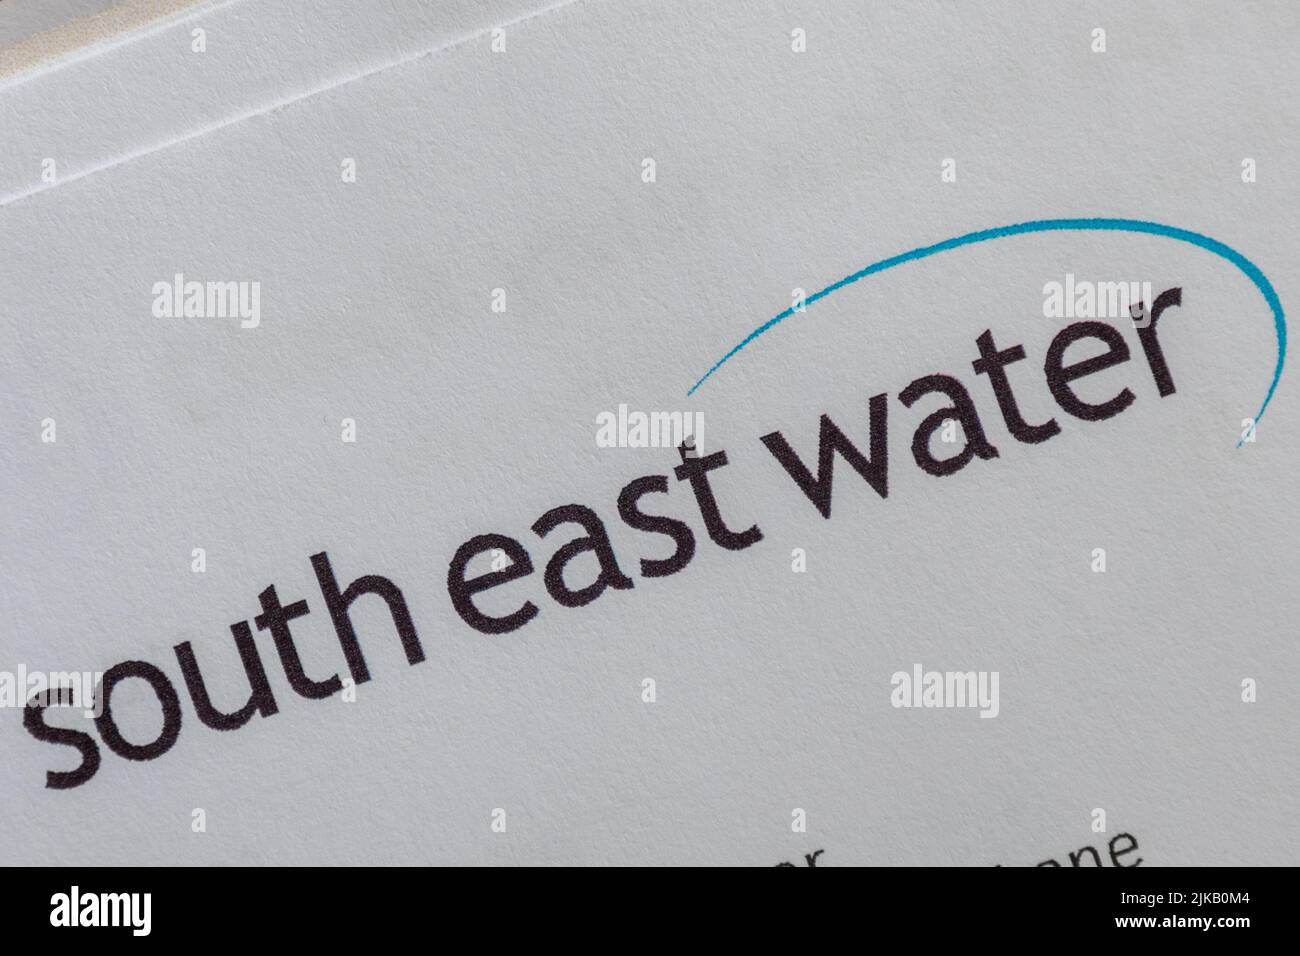 Carta o carta de South East Water, 2022, Inglaterra, Reino Unido. Cuentas de los hogares durante crisis de costo de vida Foto de stock